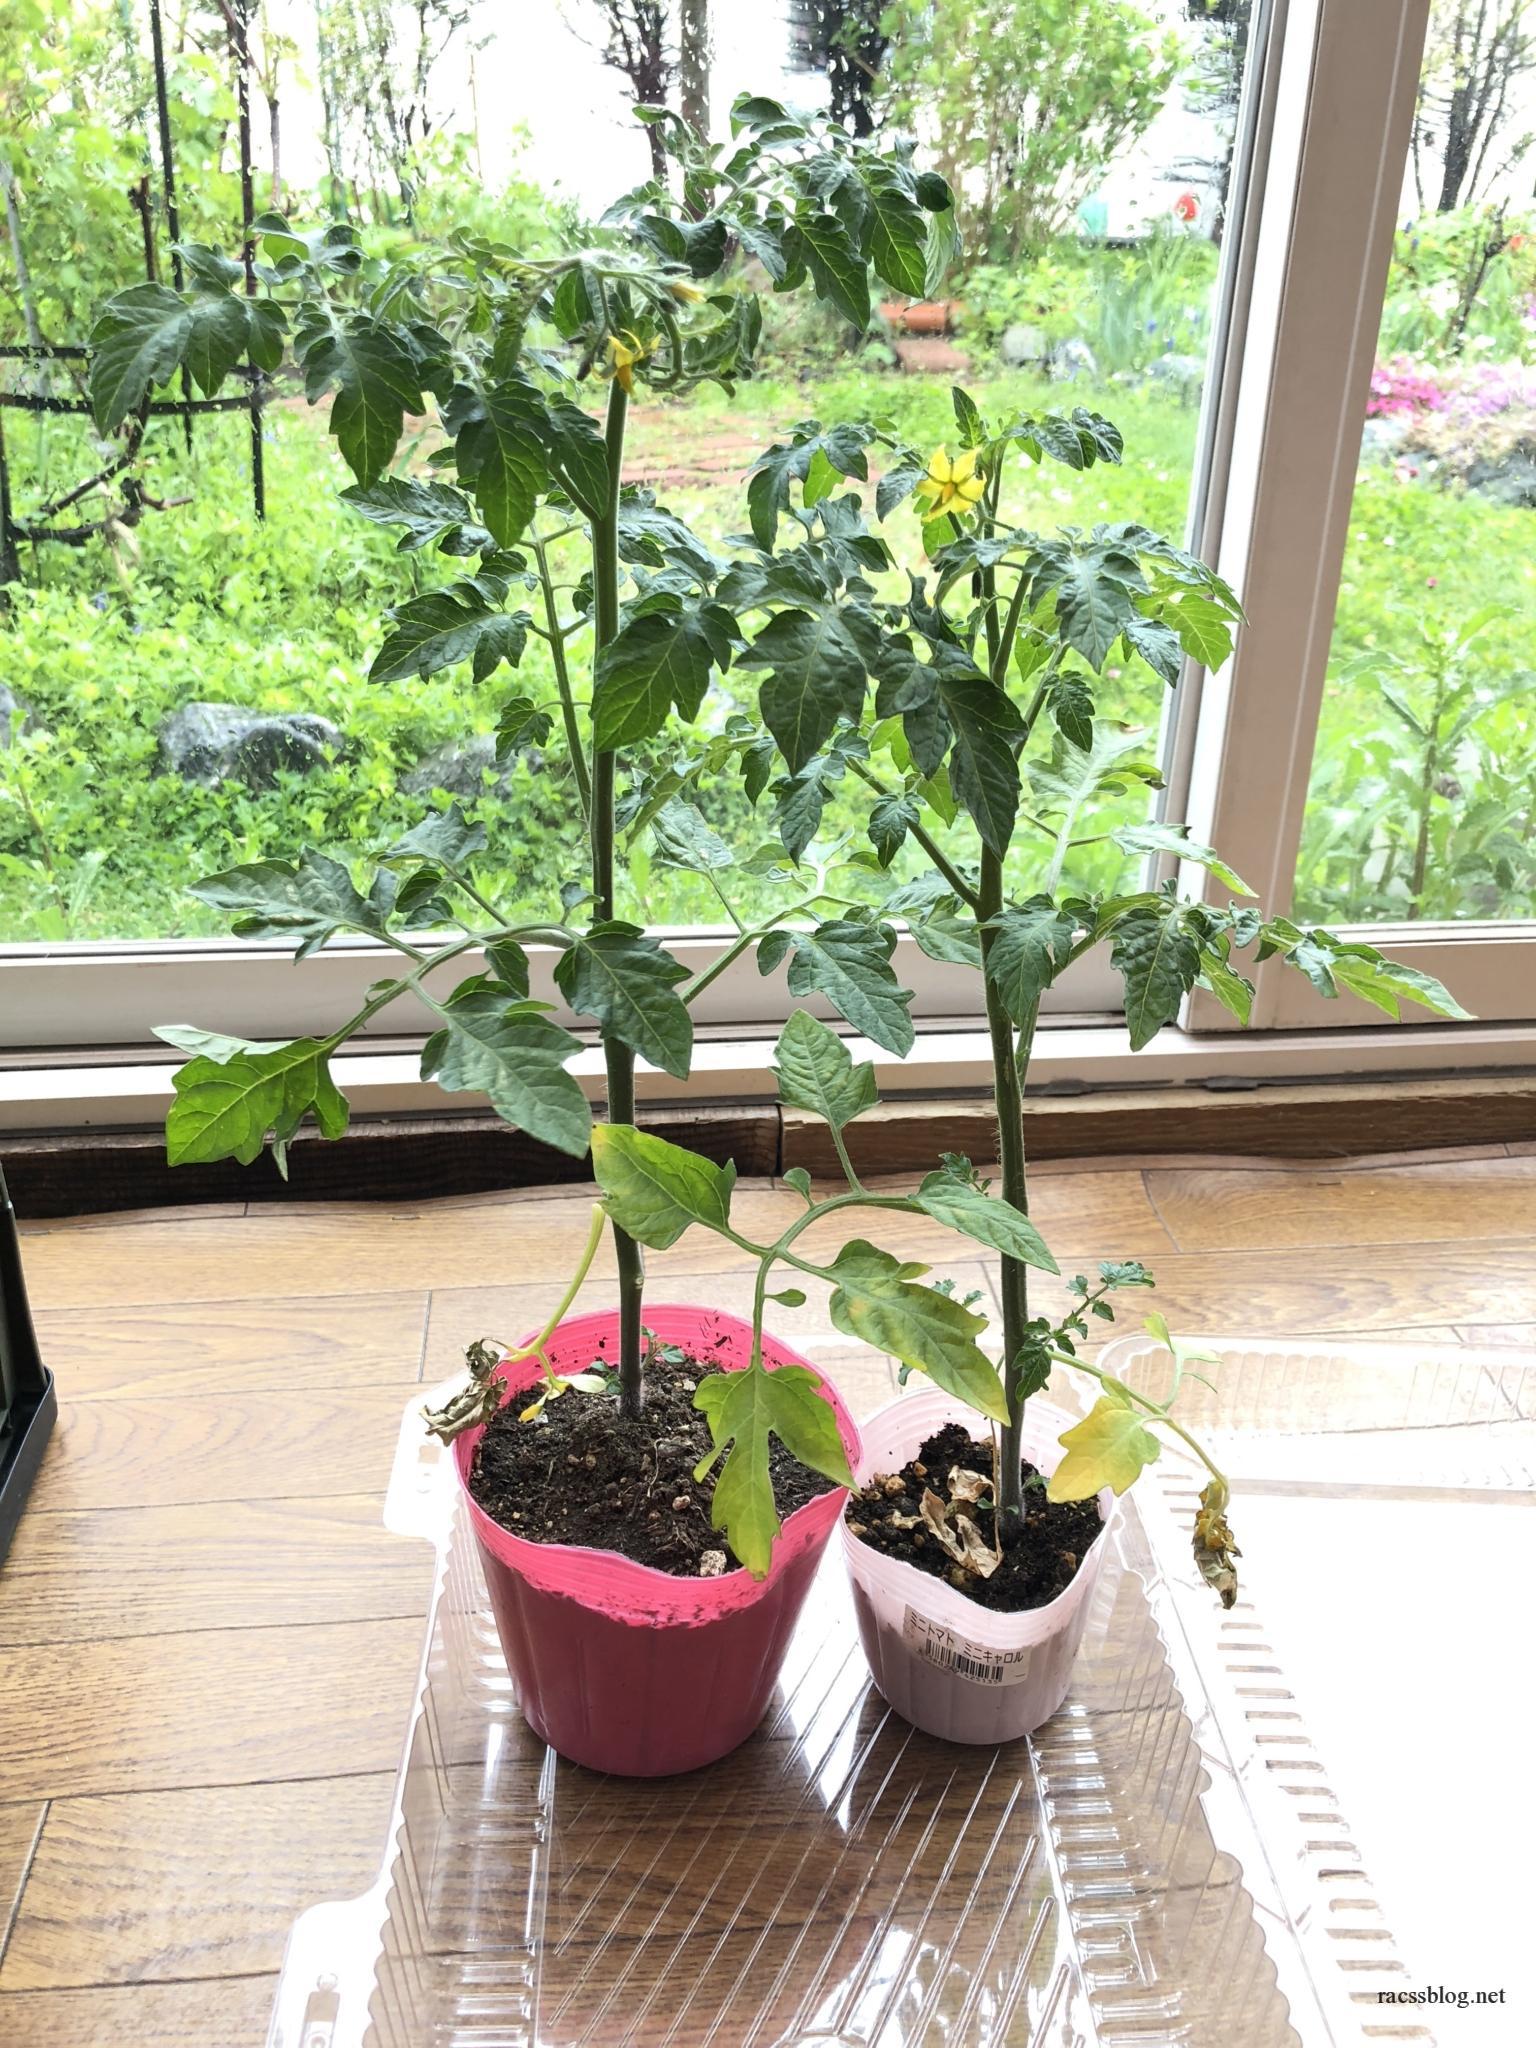 北海道の家庭菜園 ミニトマト苗を脇芽から増やす方法 Racssblog